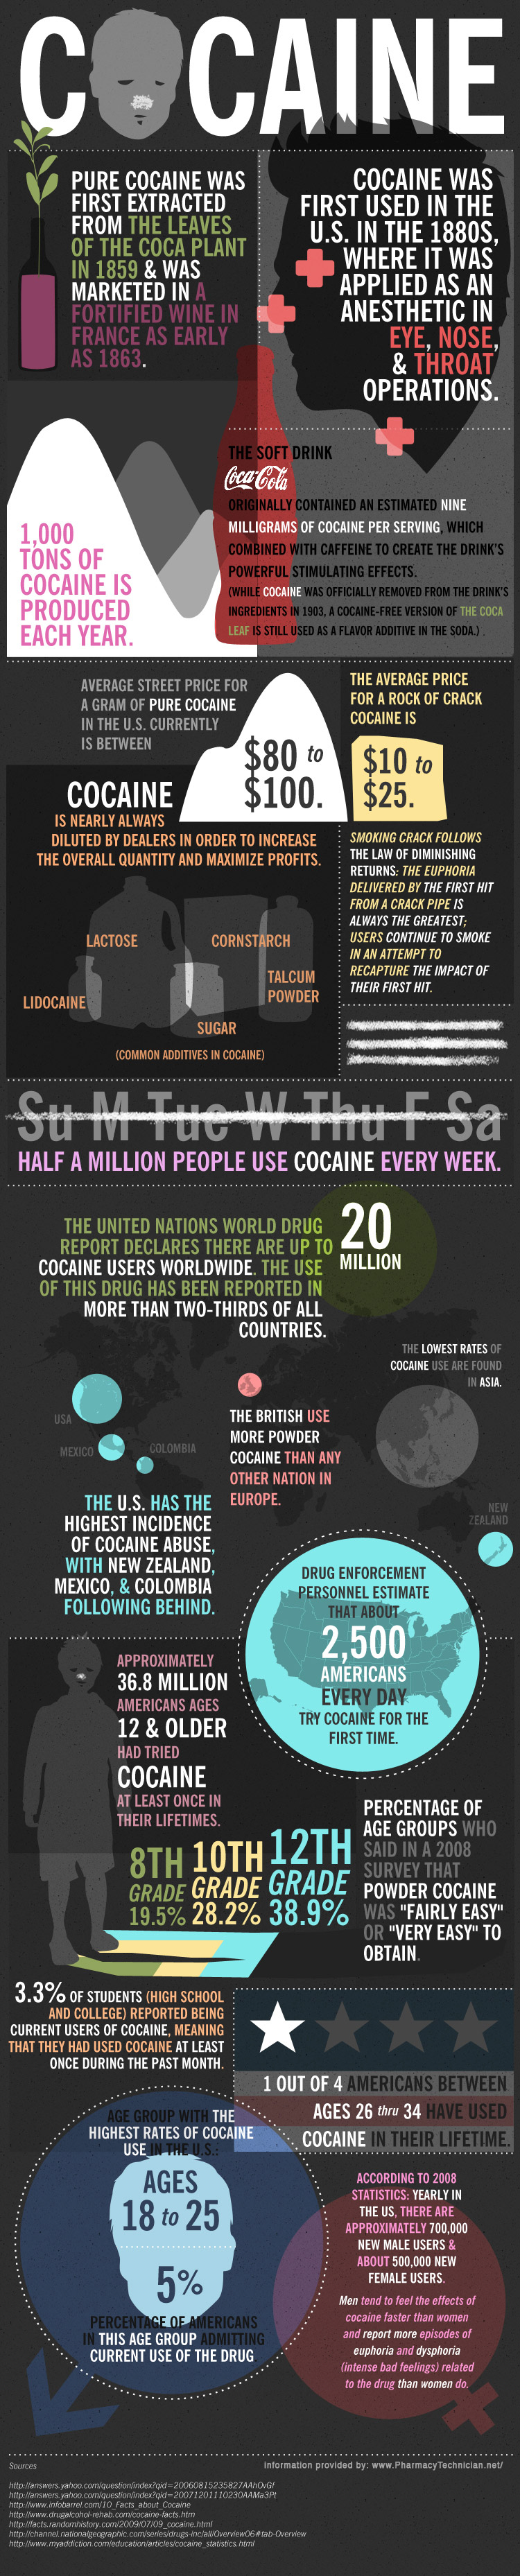 InfoGraphic on Cocaine,